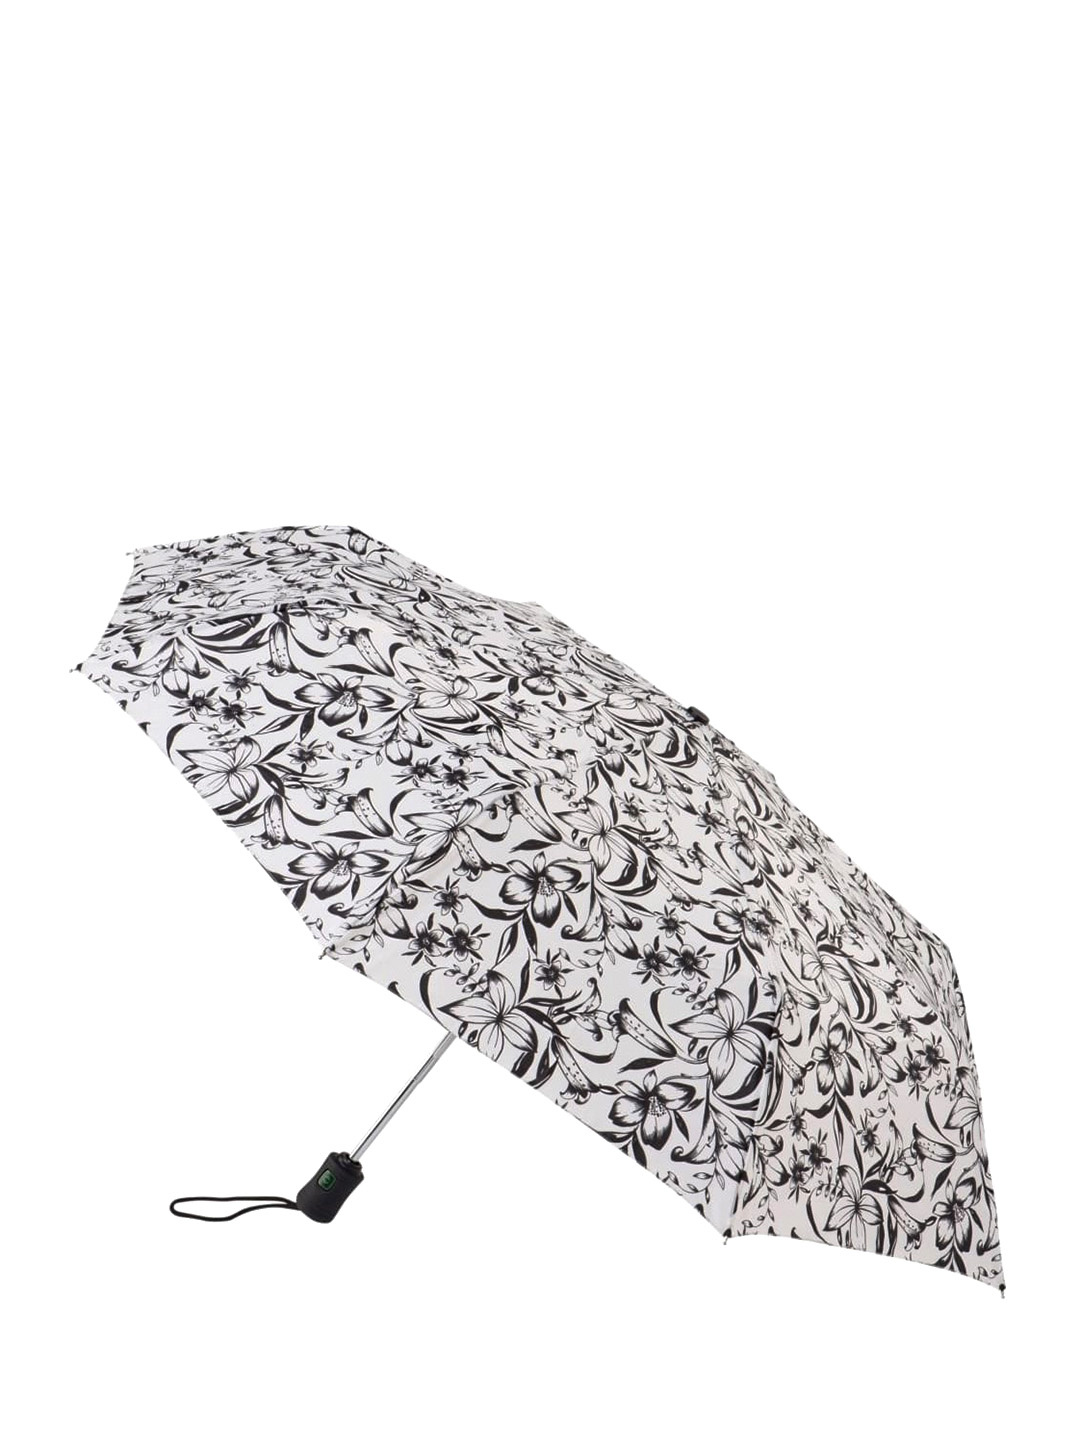 Фото Женский зонт-автомат в черно-белой гамме 